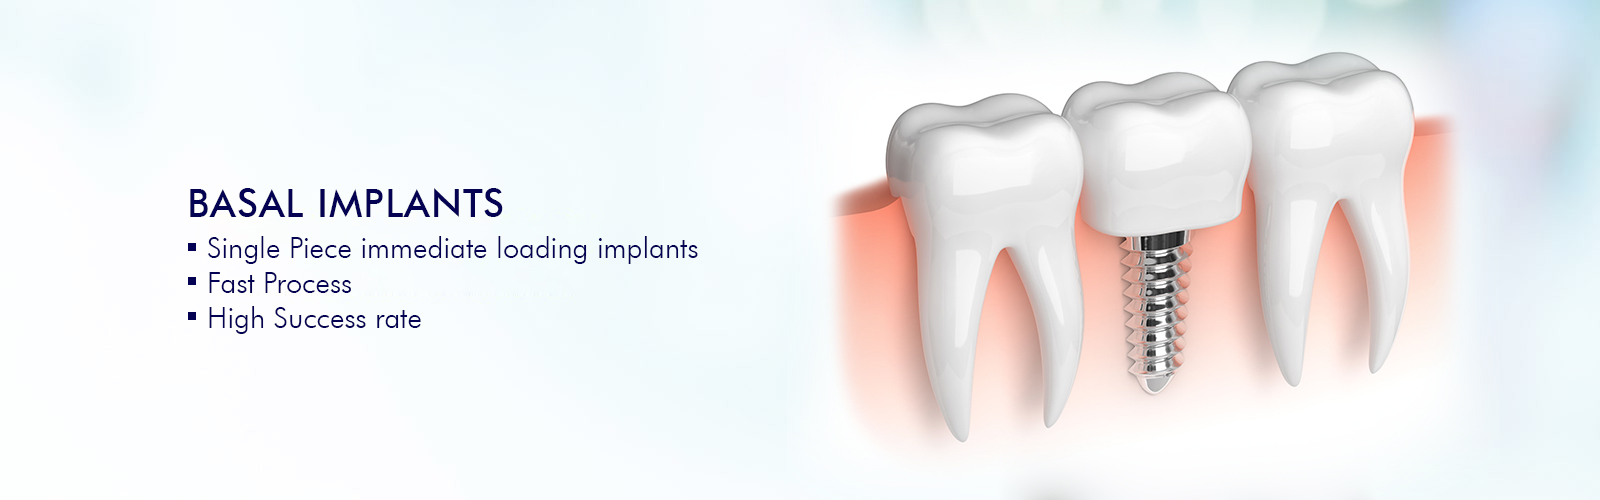 dientes permanentes con implantes basales en india